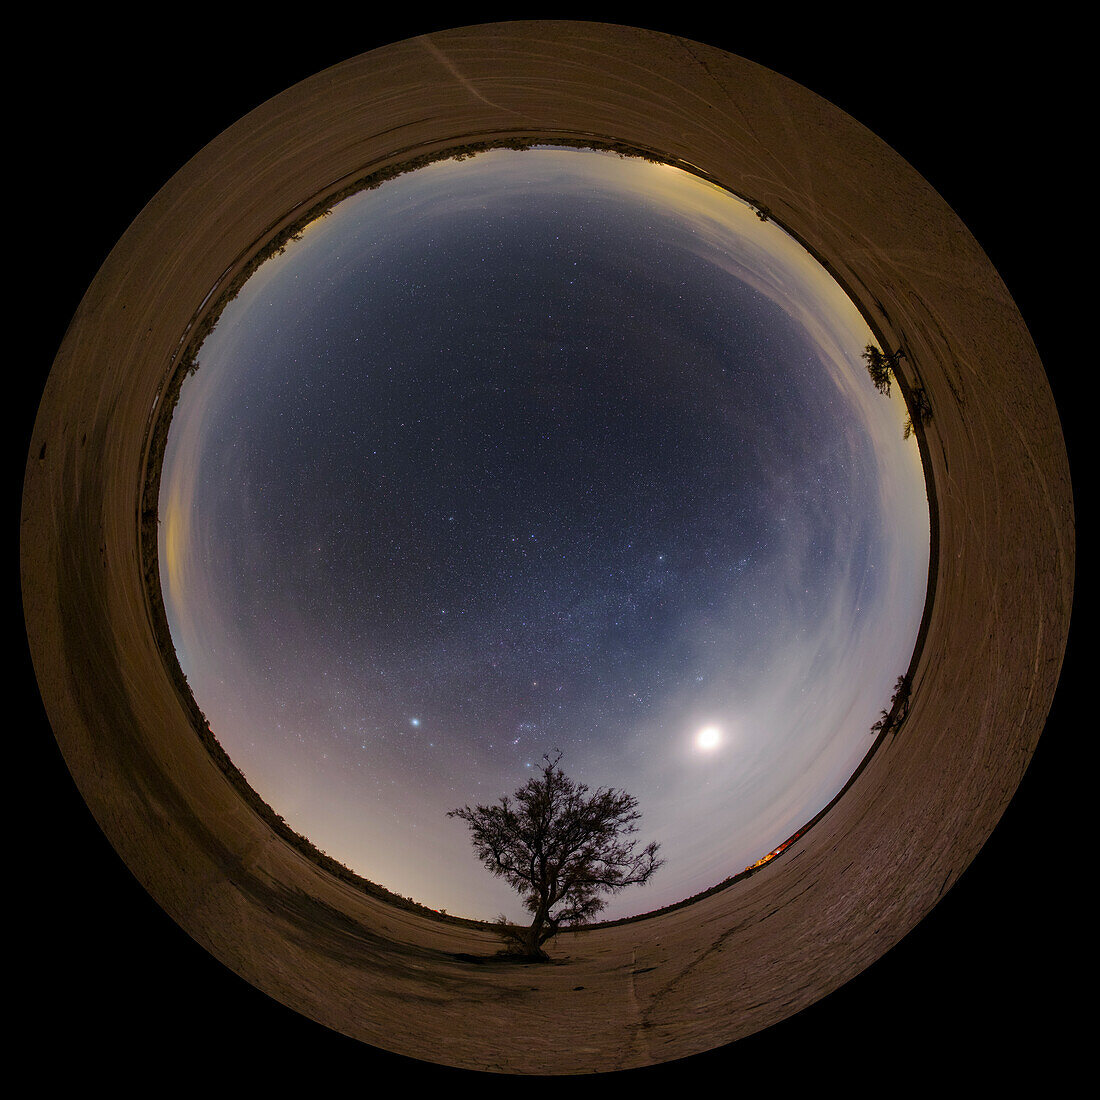 Night sky over desert, 360-degree view